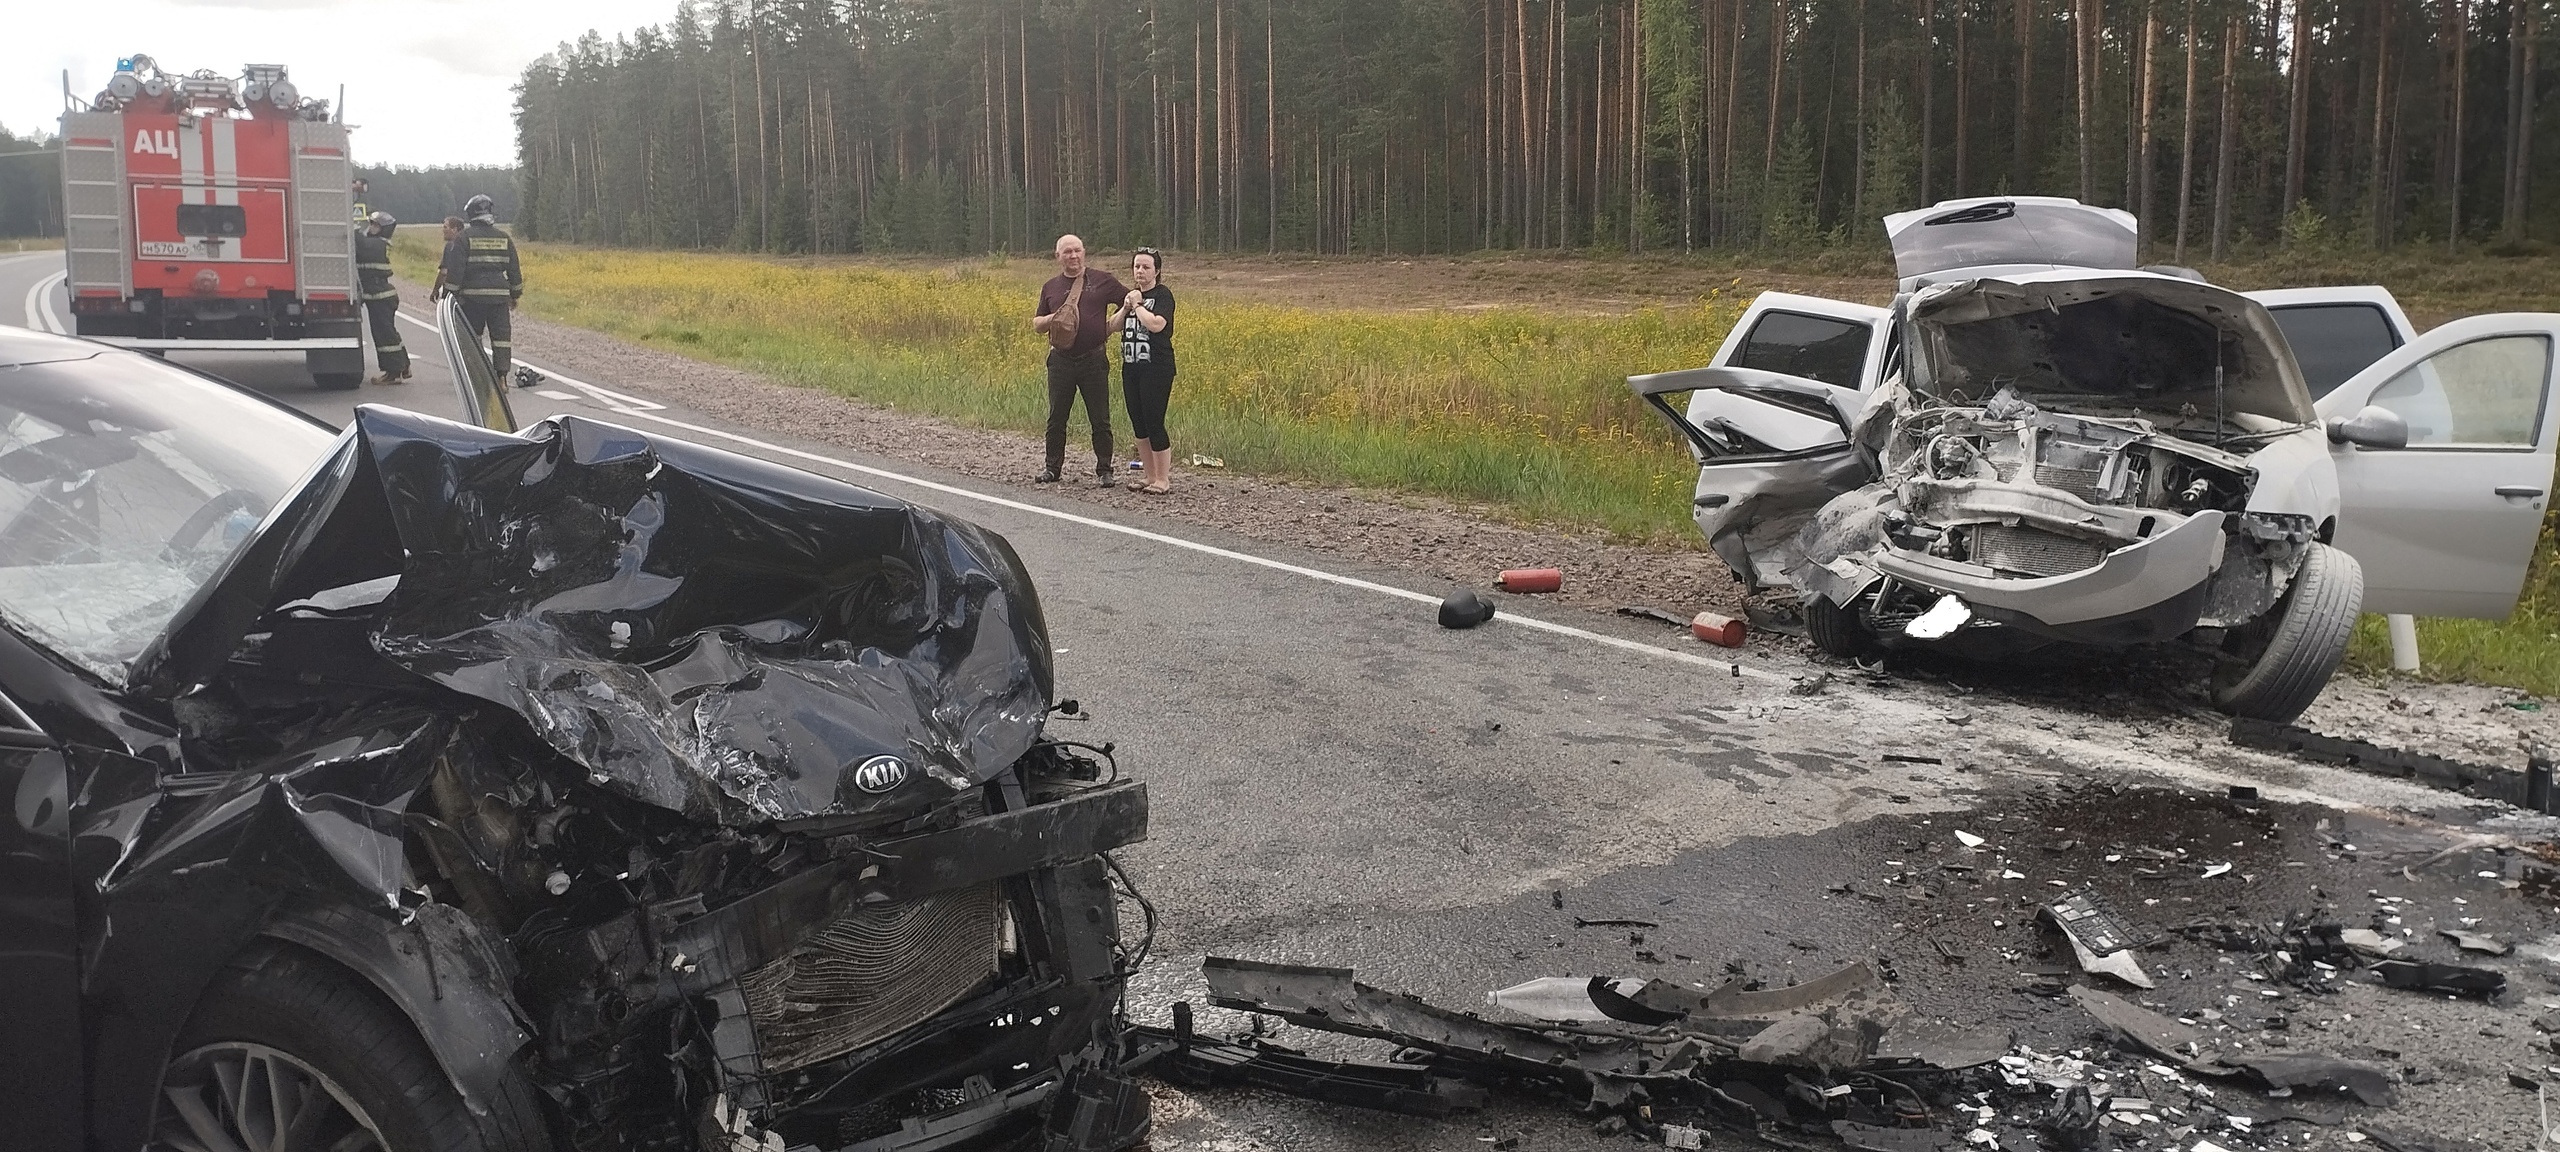 Автомобили искорежило после лобовой аварии на трассе в Карелии